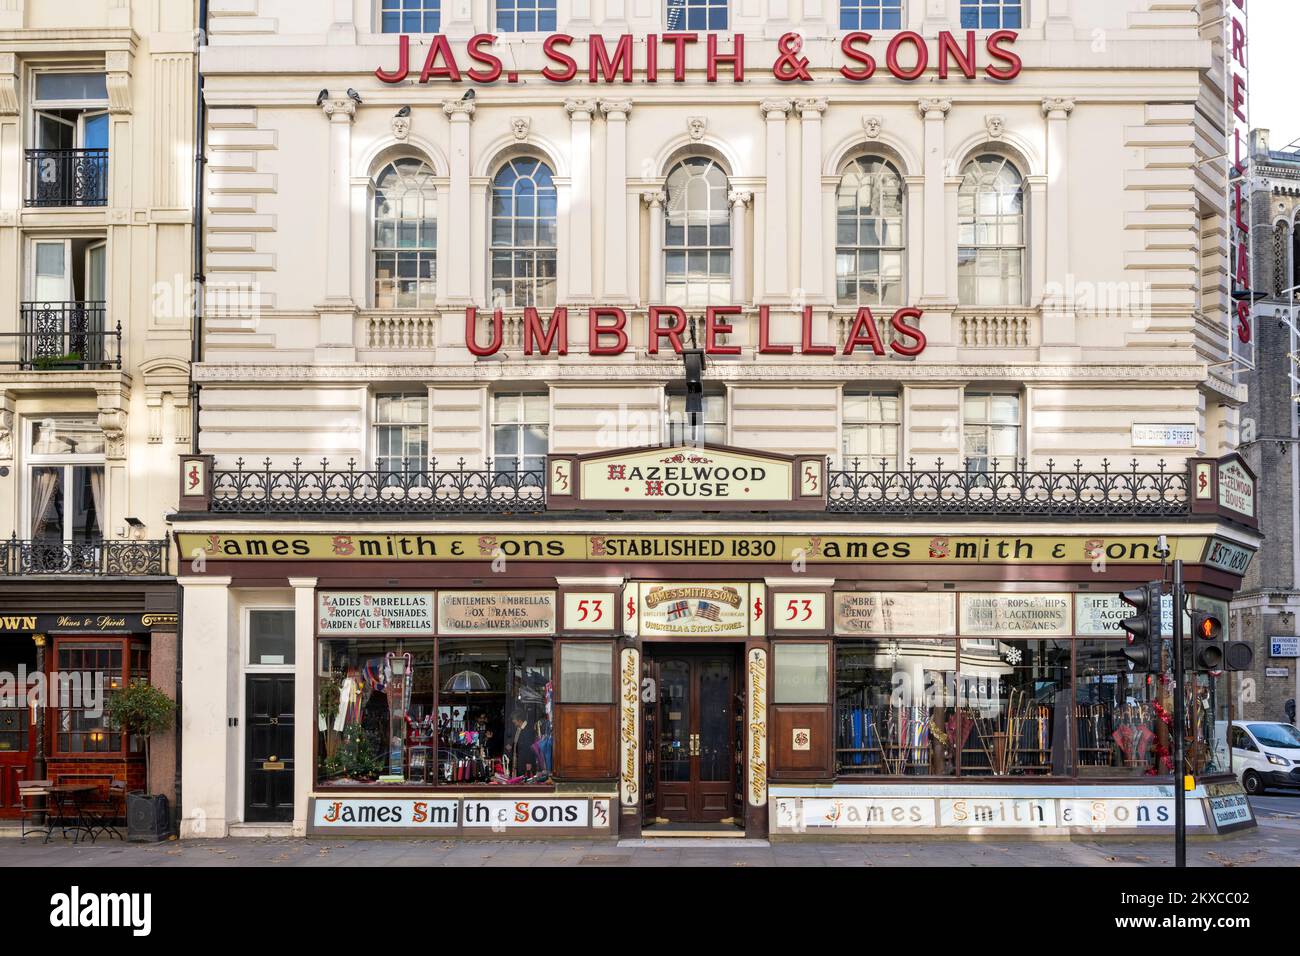 Boutique de parasols James Smith & Sons, Hazelwood House, New Oxford Street, avec une façade victorienne en grande partie intacte. Hazelwood House, 53 New Oxford Str Banque D'Images